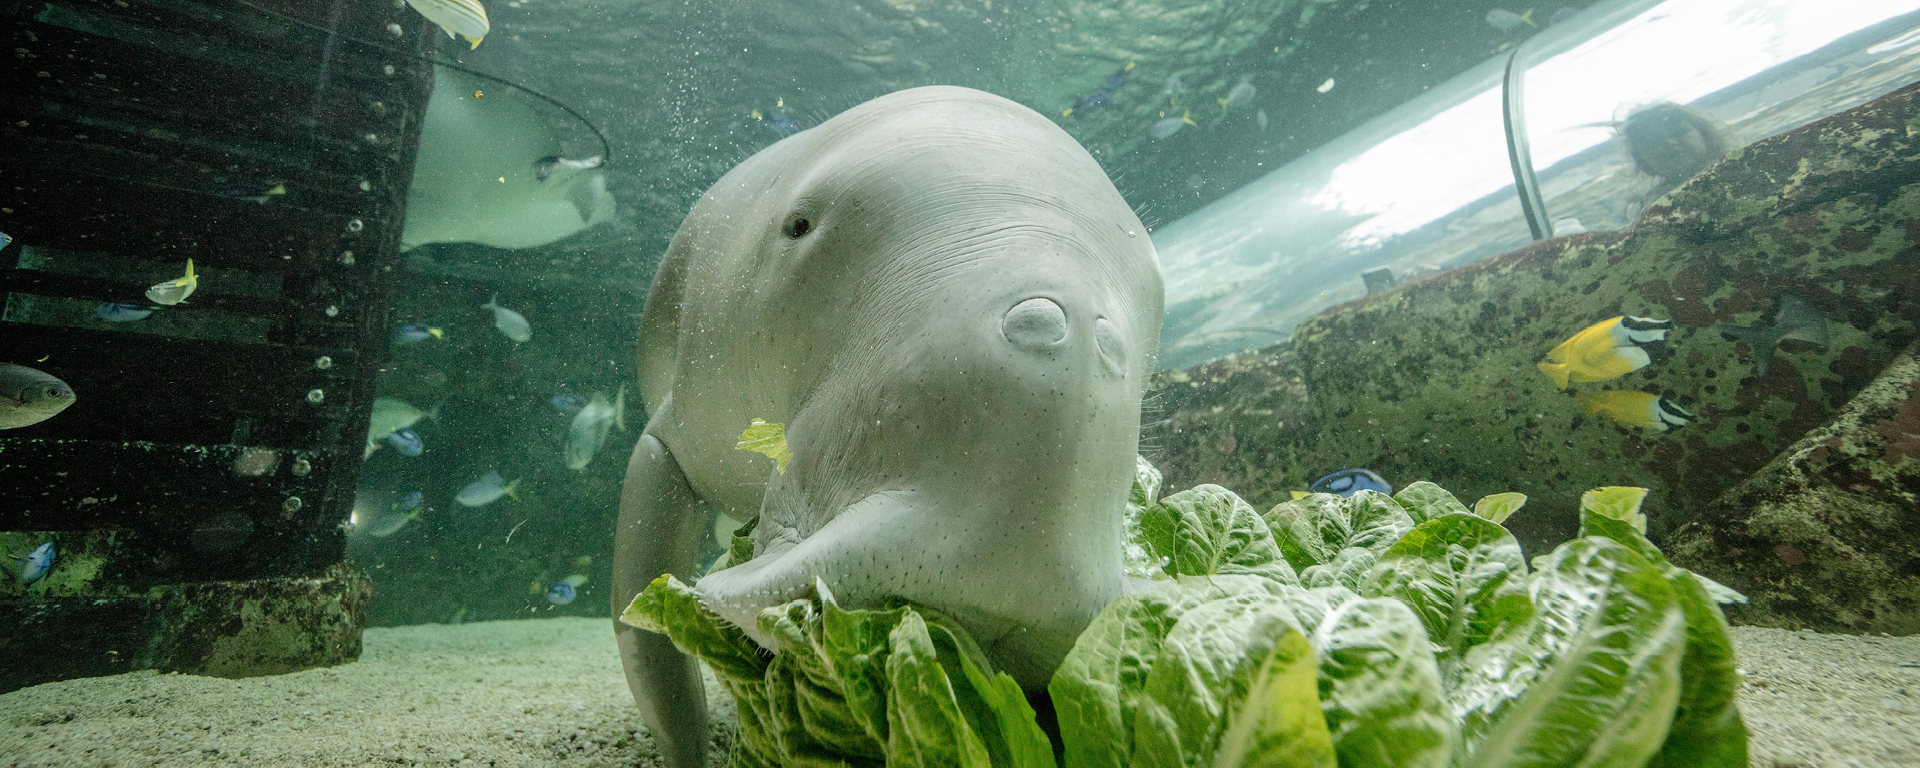 Explore what's inside Sydney Aquarium | SEA LIFE Sydney